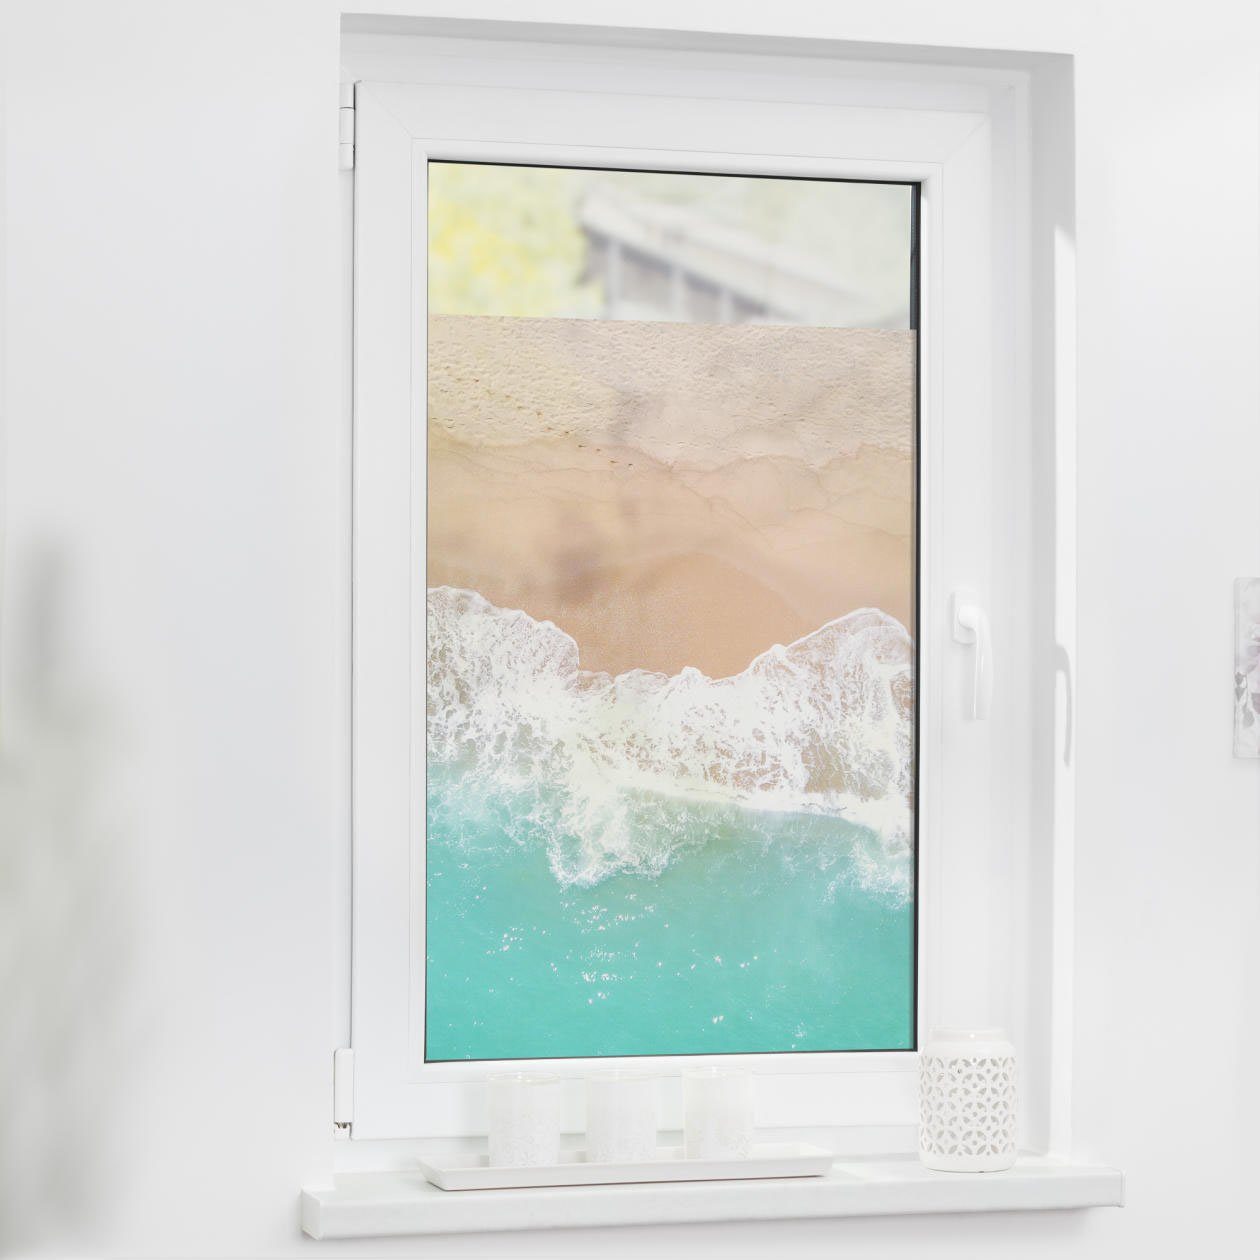 Fensterfolie 90x200 cm Milchglas Blickdicht